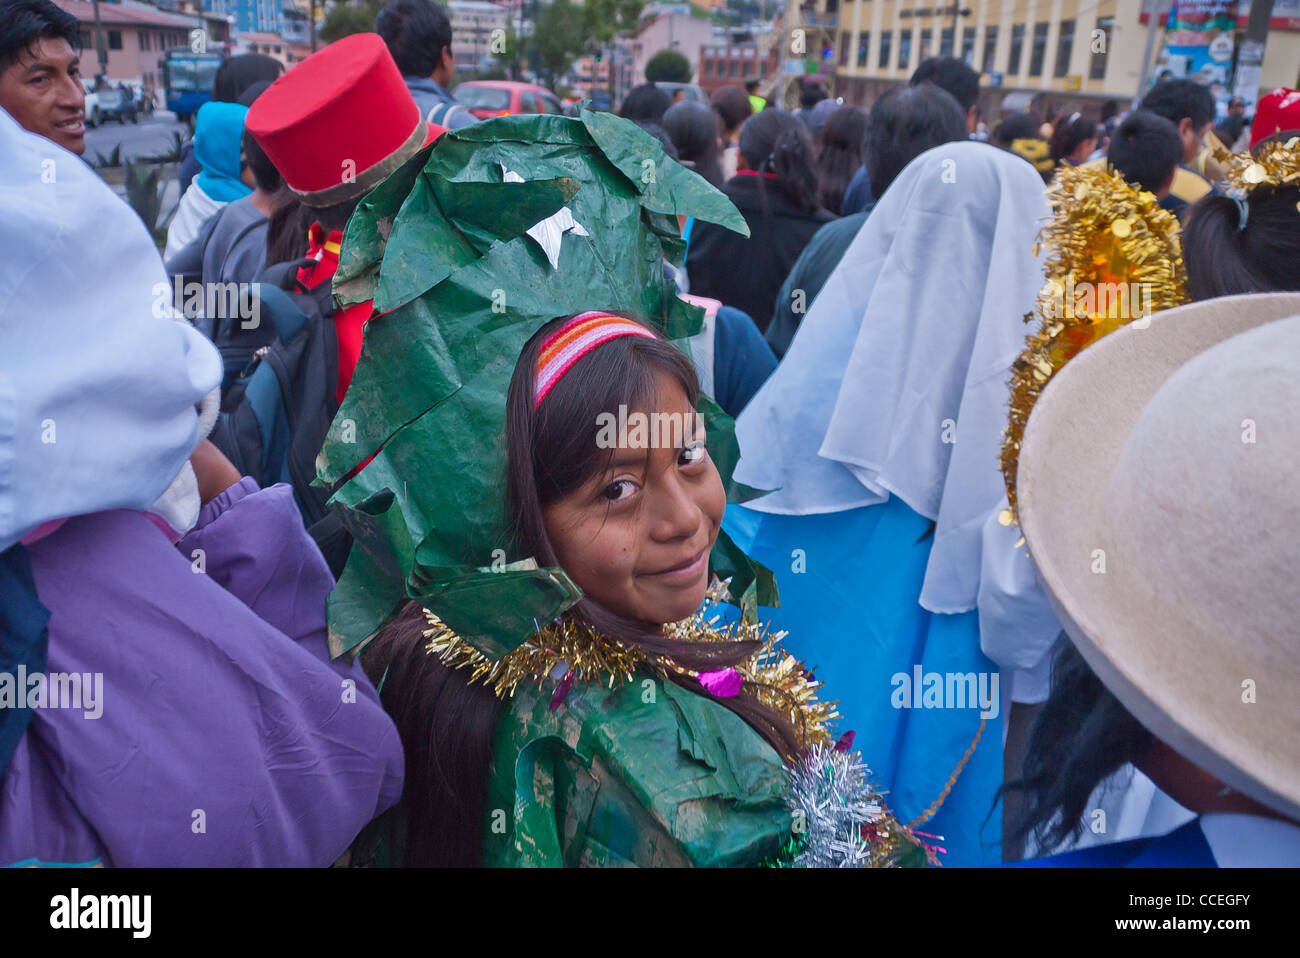 Ein 12-13 jährige hispanischen Mädchen gekleidet in einem grünen Baum Kostüm geht in die Kinder Christmas Parade, Quito, Ecuador. Stockfoto